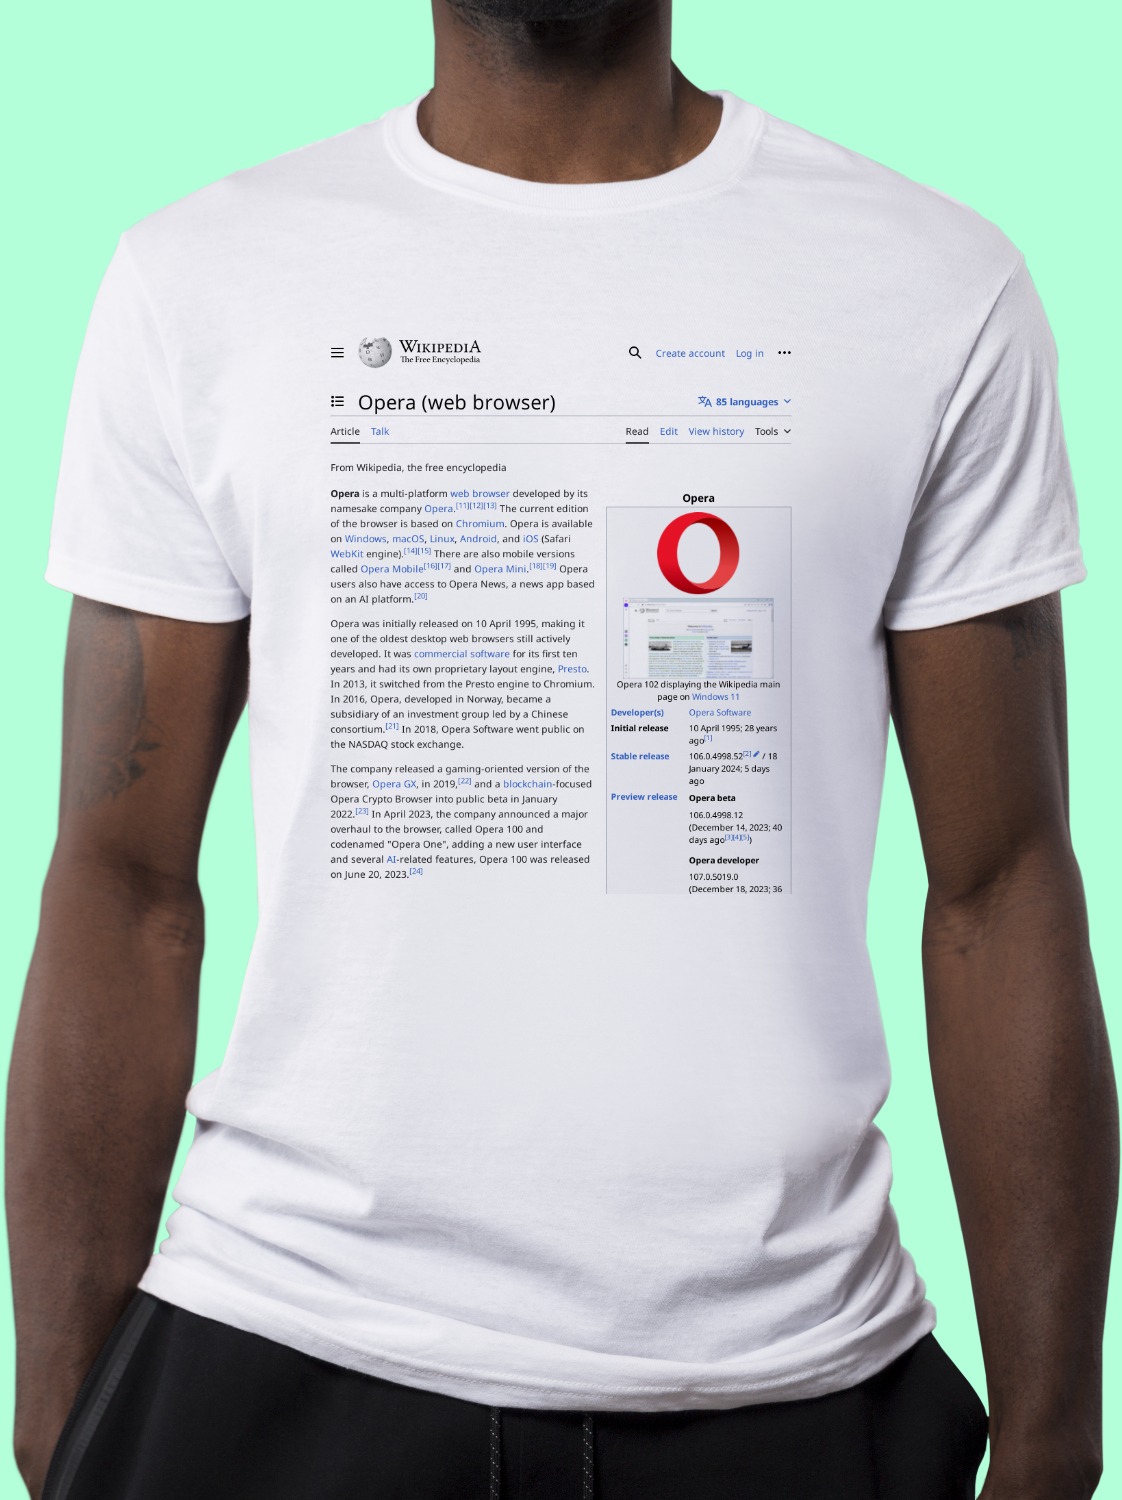 Opera_(web_browser) Wikipedia Shirt